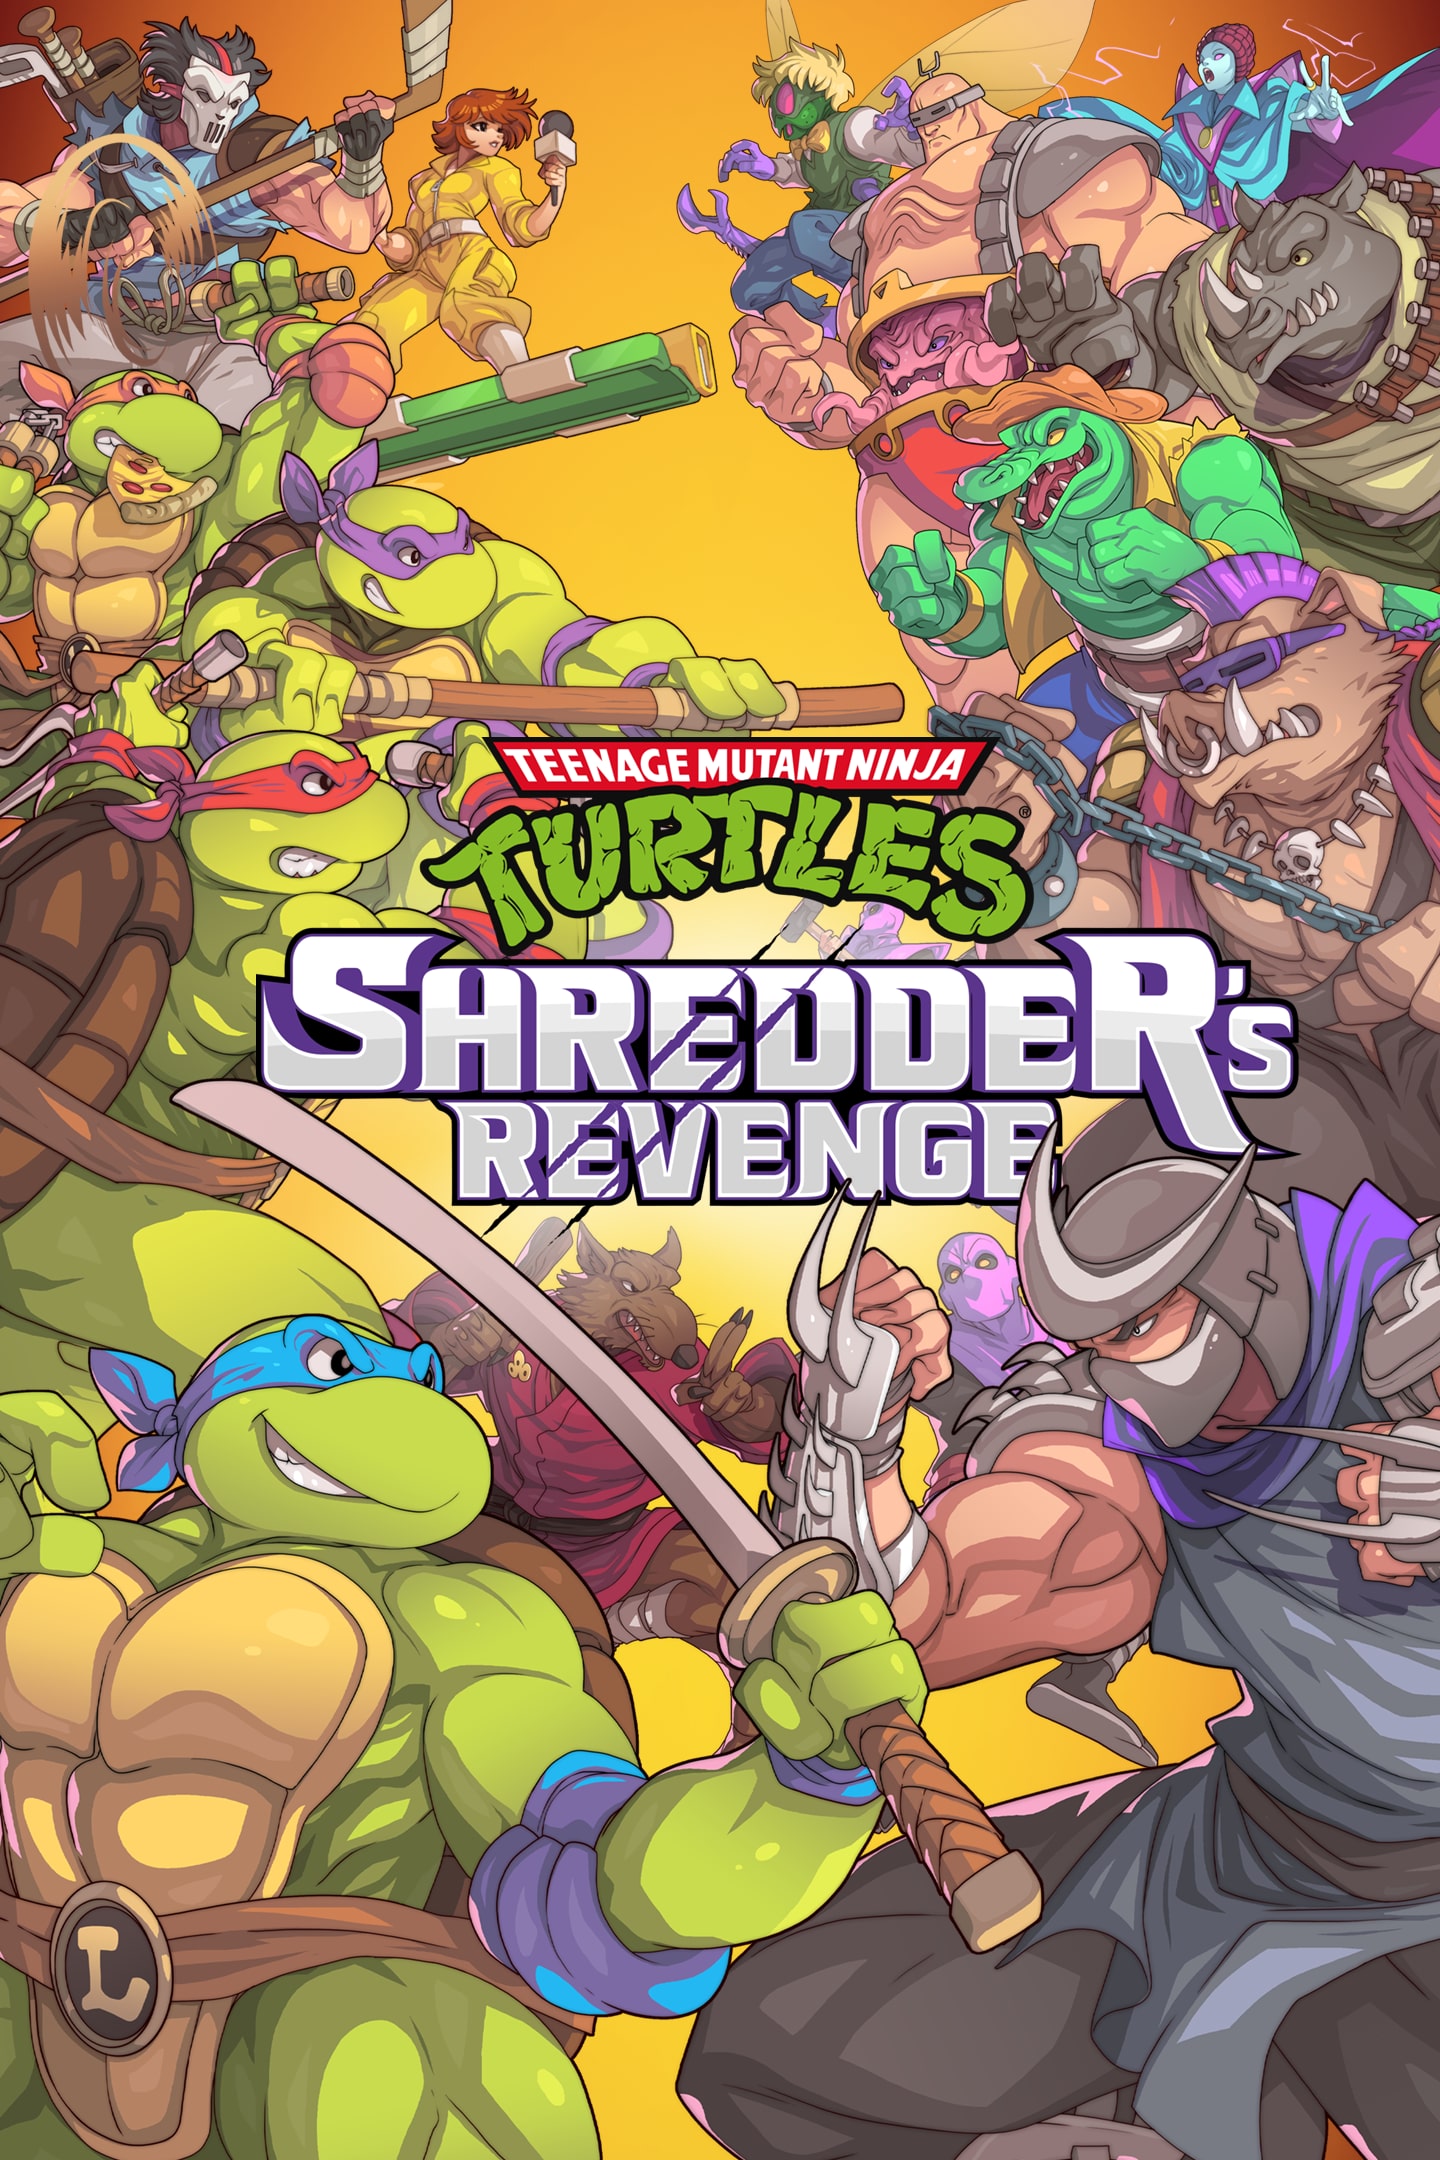 TMNT Shredders Revenge Mikey Desktop Wallpaper by JPNinja426 on DeviantArt